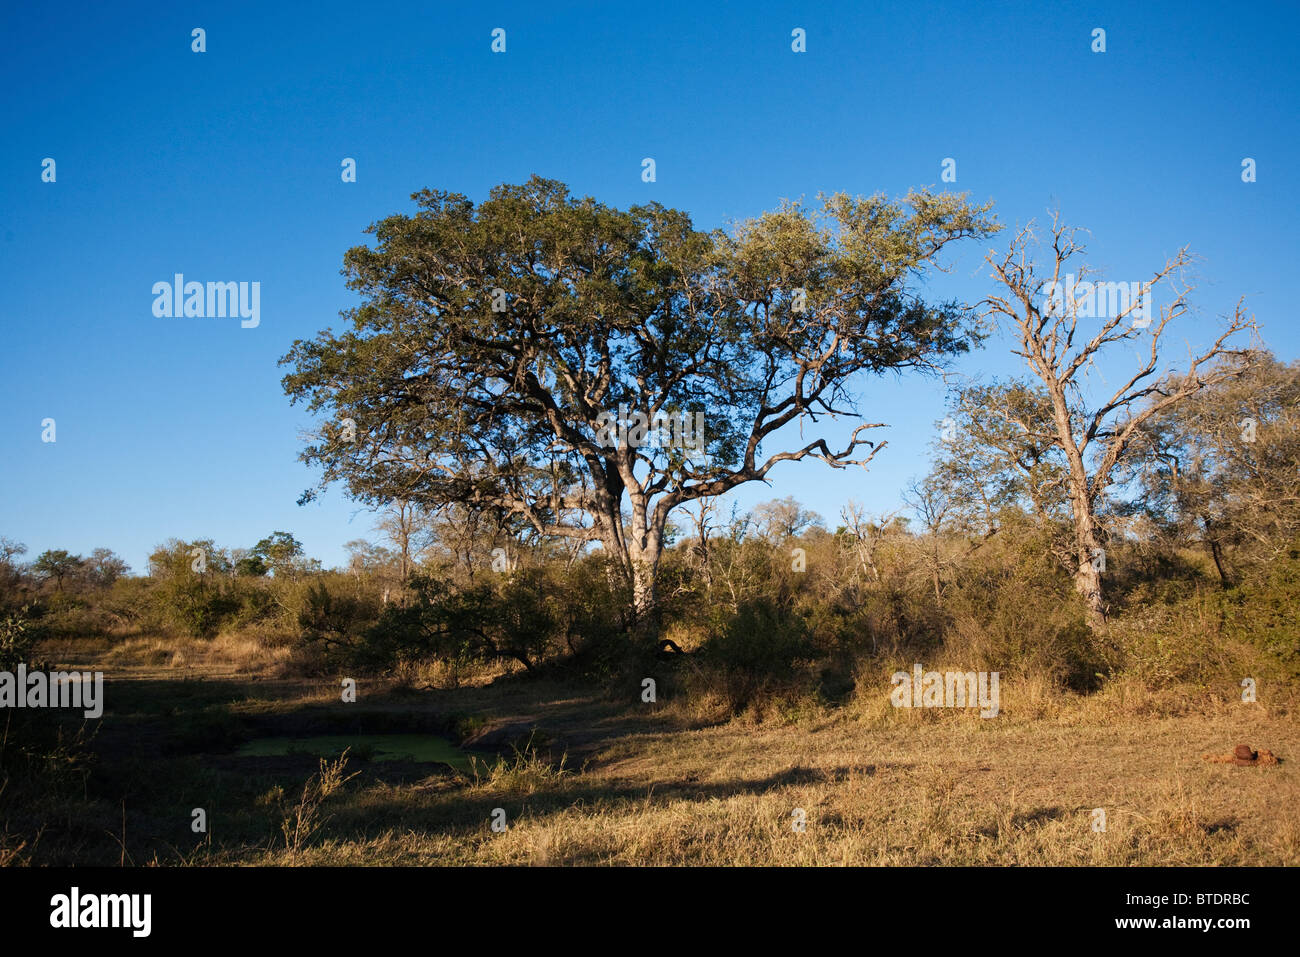 Vue panoramique d'un arbre leadwood (Combretum imberbe) et point d'eau dans la savane du Parc National Kruger Banque D'Images